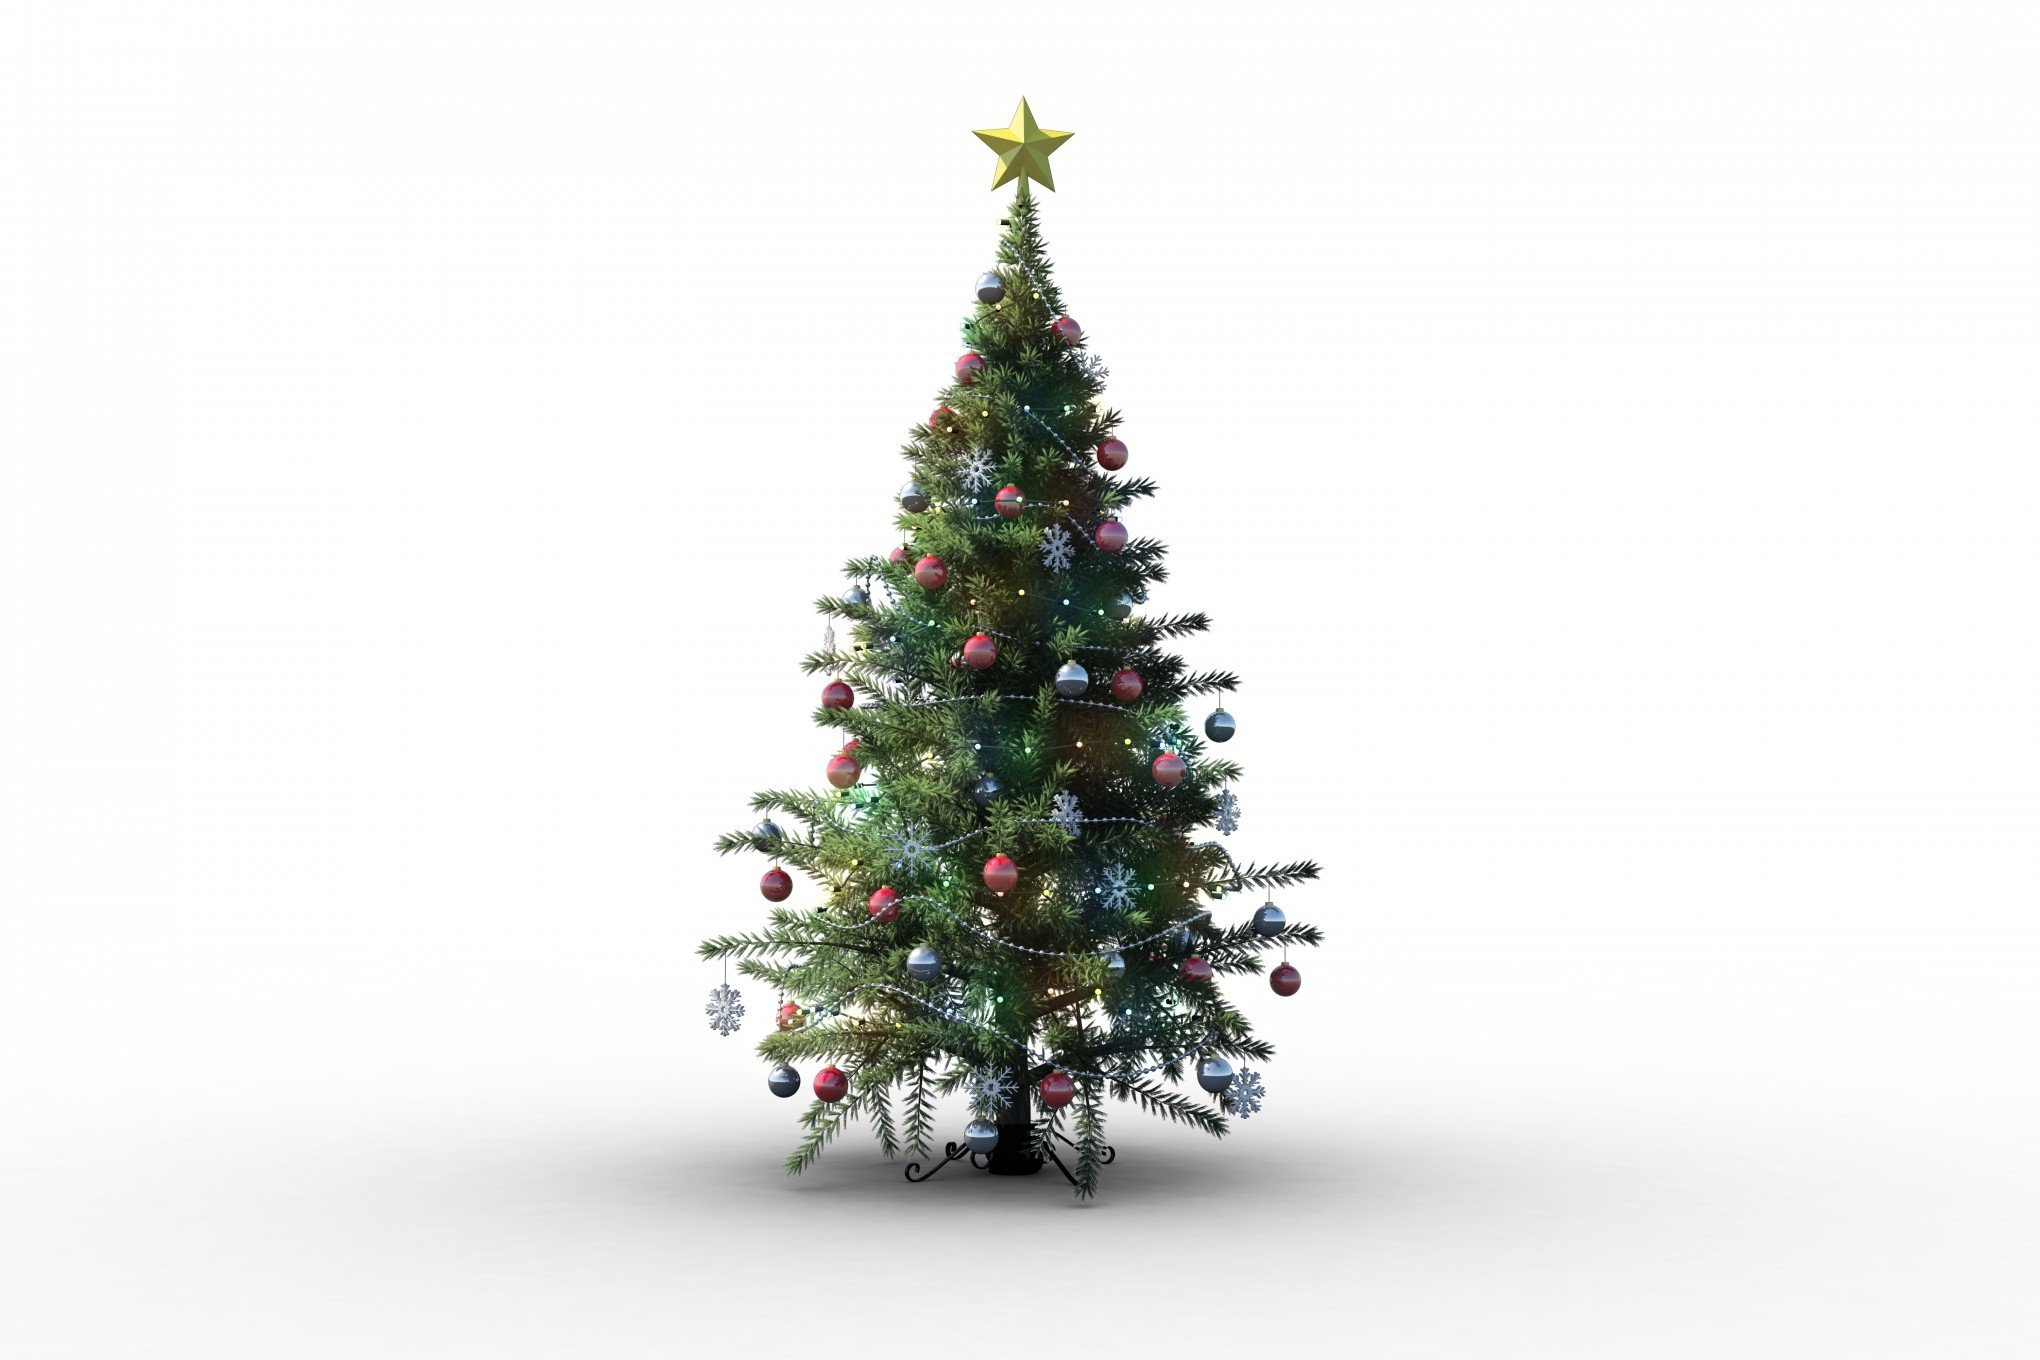 Entenda a curiosa origem da árvore de Natal